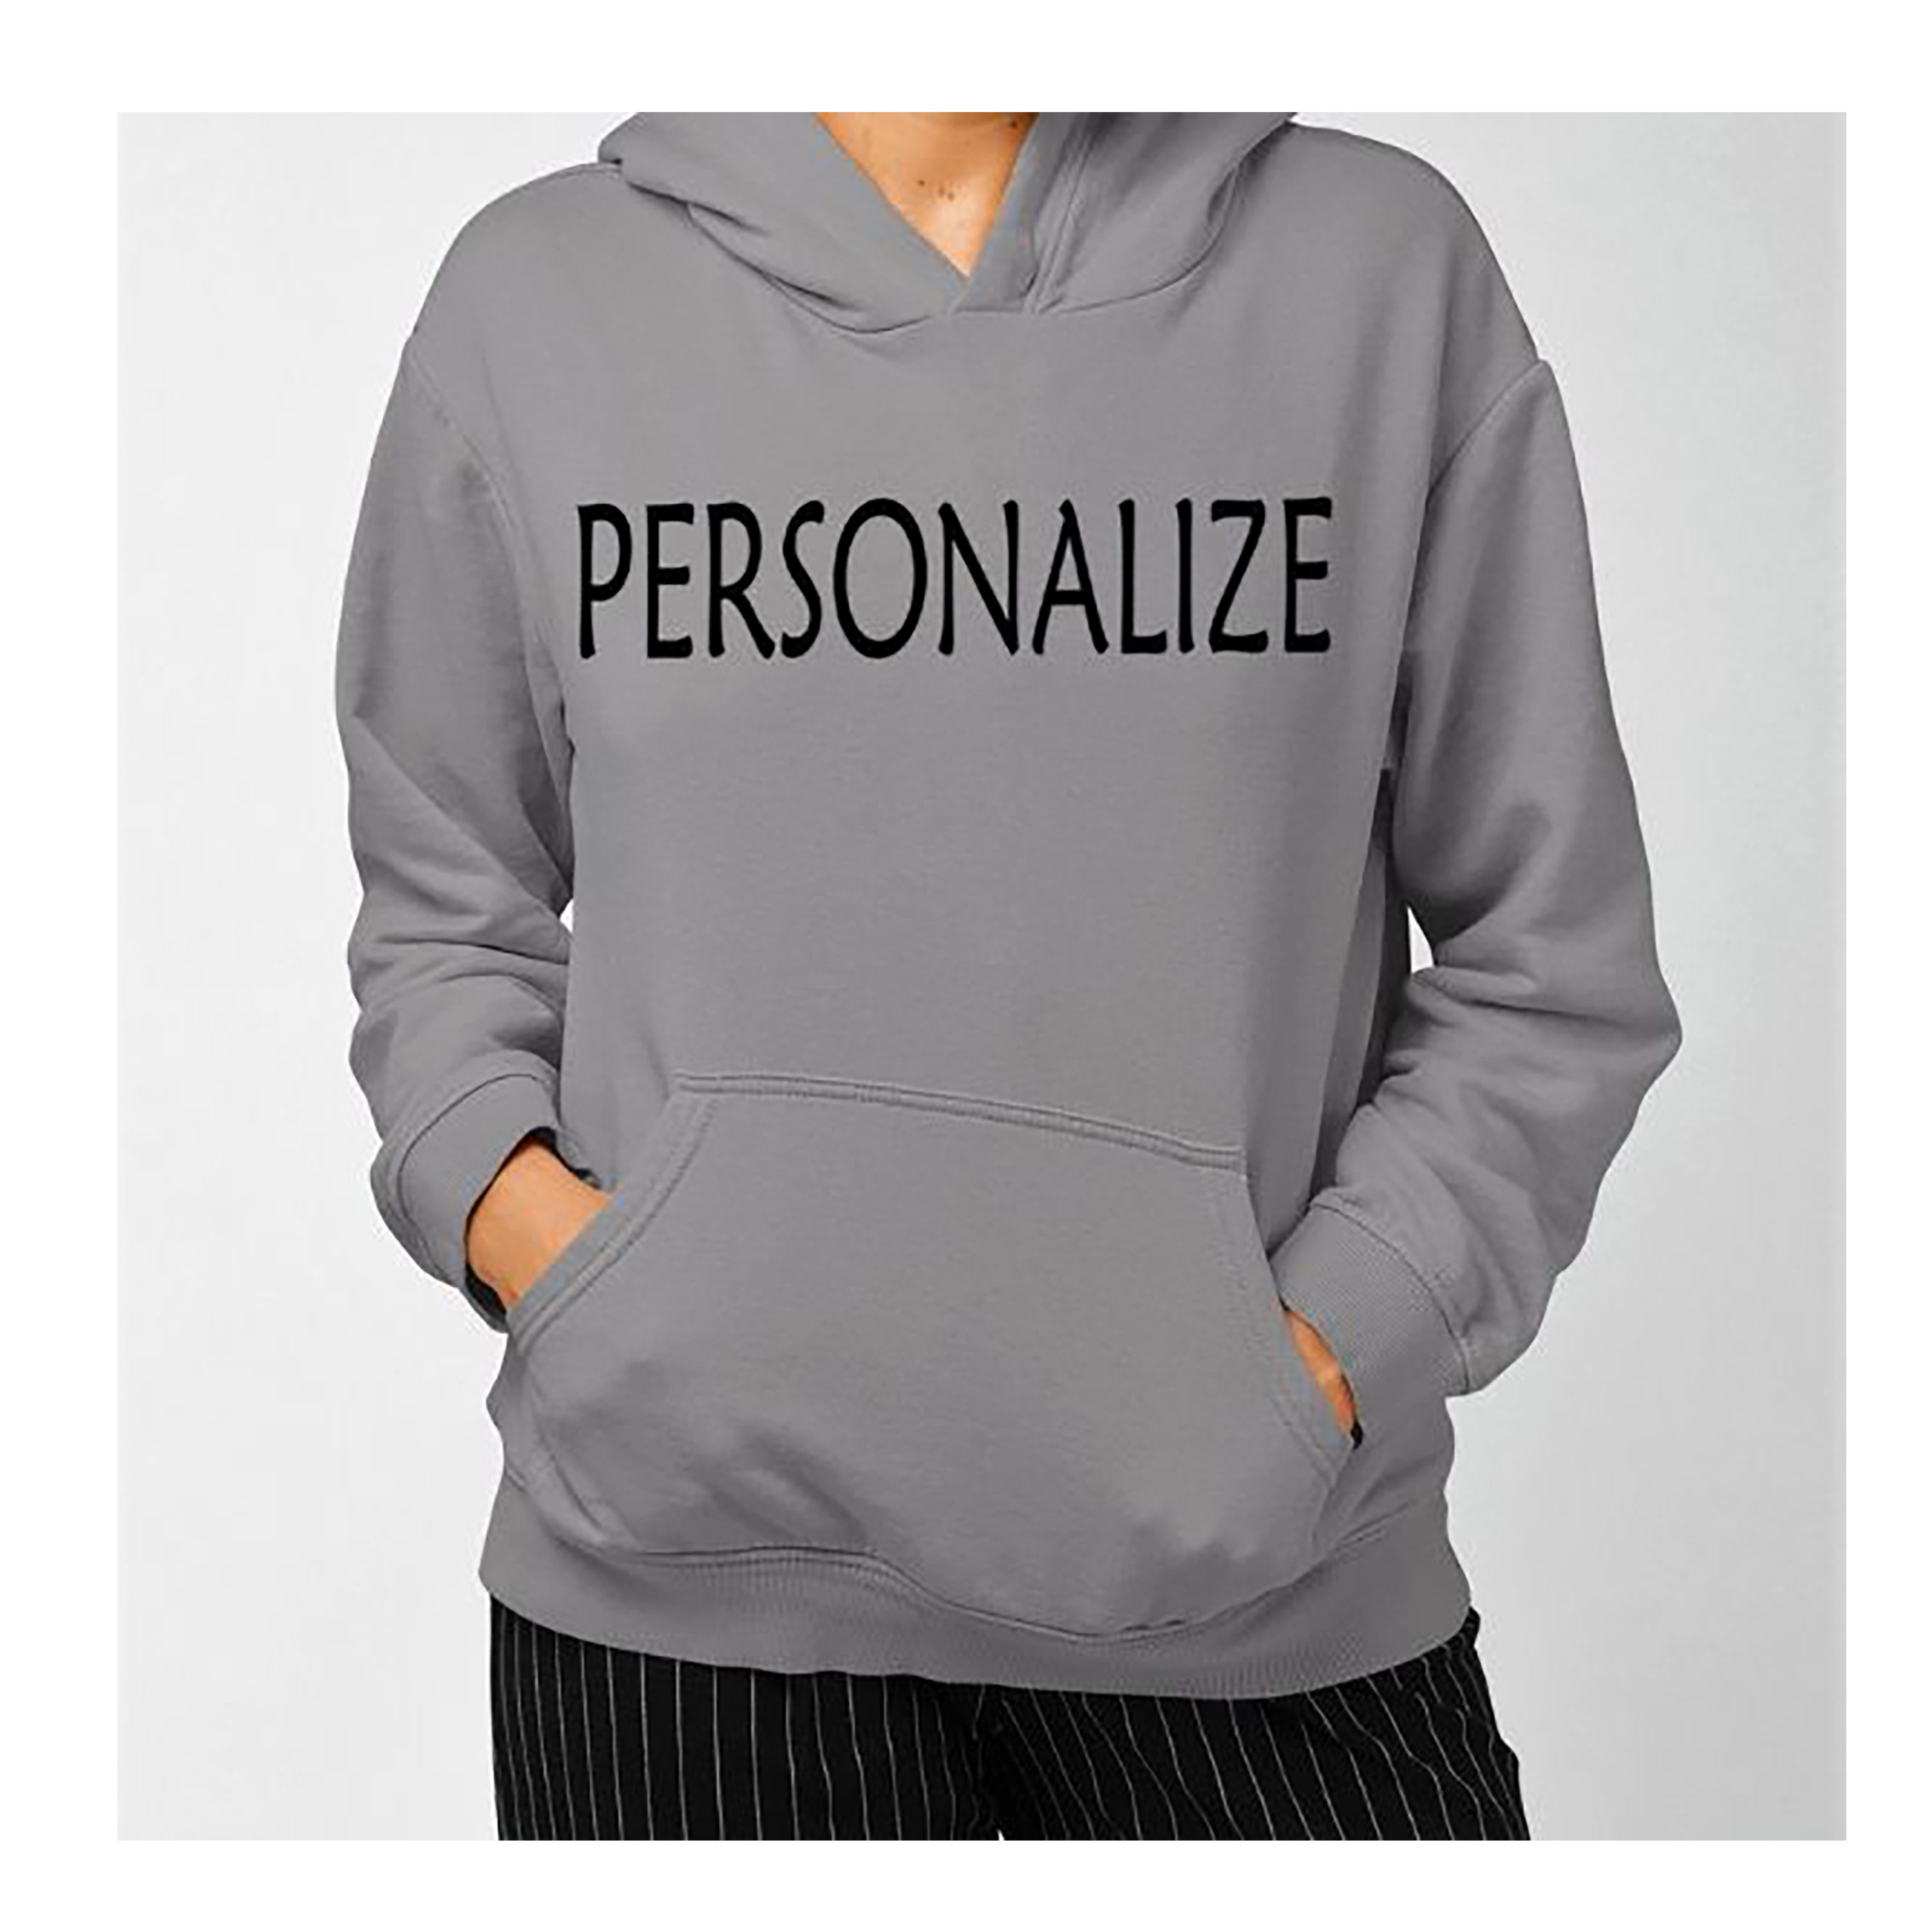 "PERSONALIZE" Hoodie & Sweatshirt